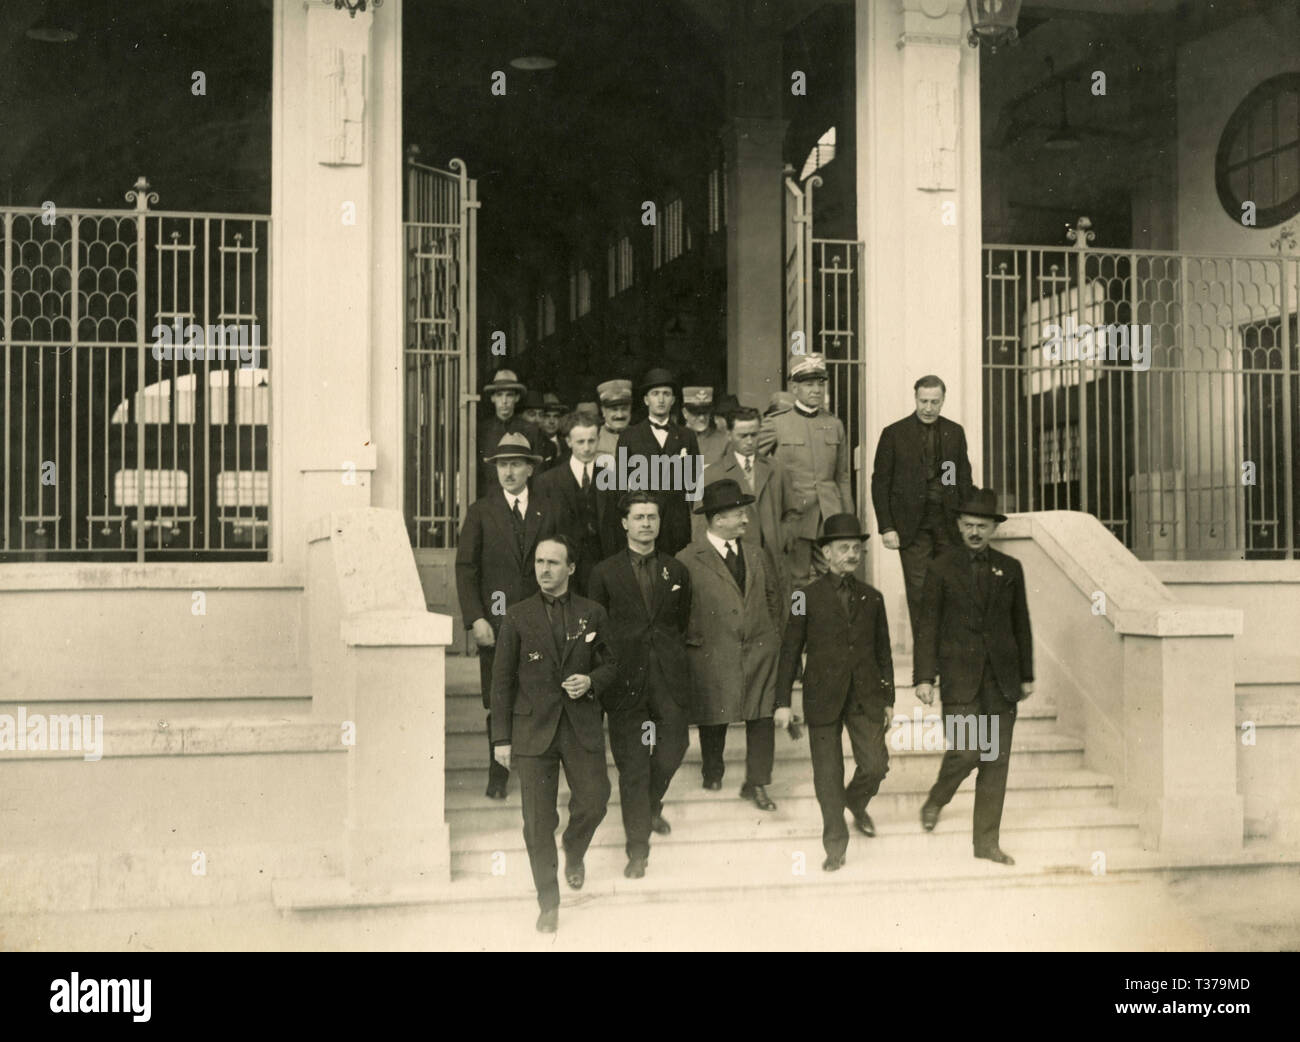 Les autorités fascistes visiter une usine, Rome, Italie 1920 Banque D'Images